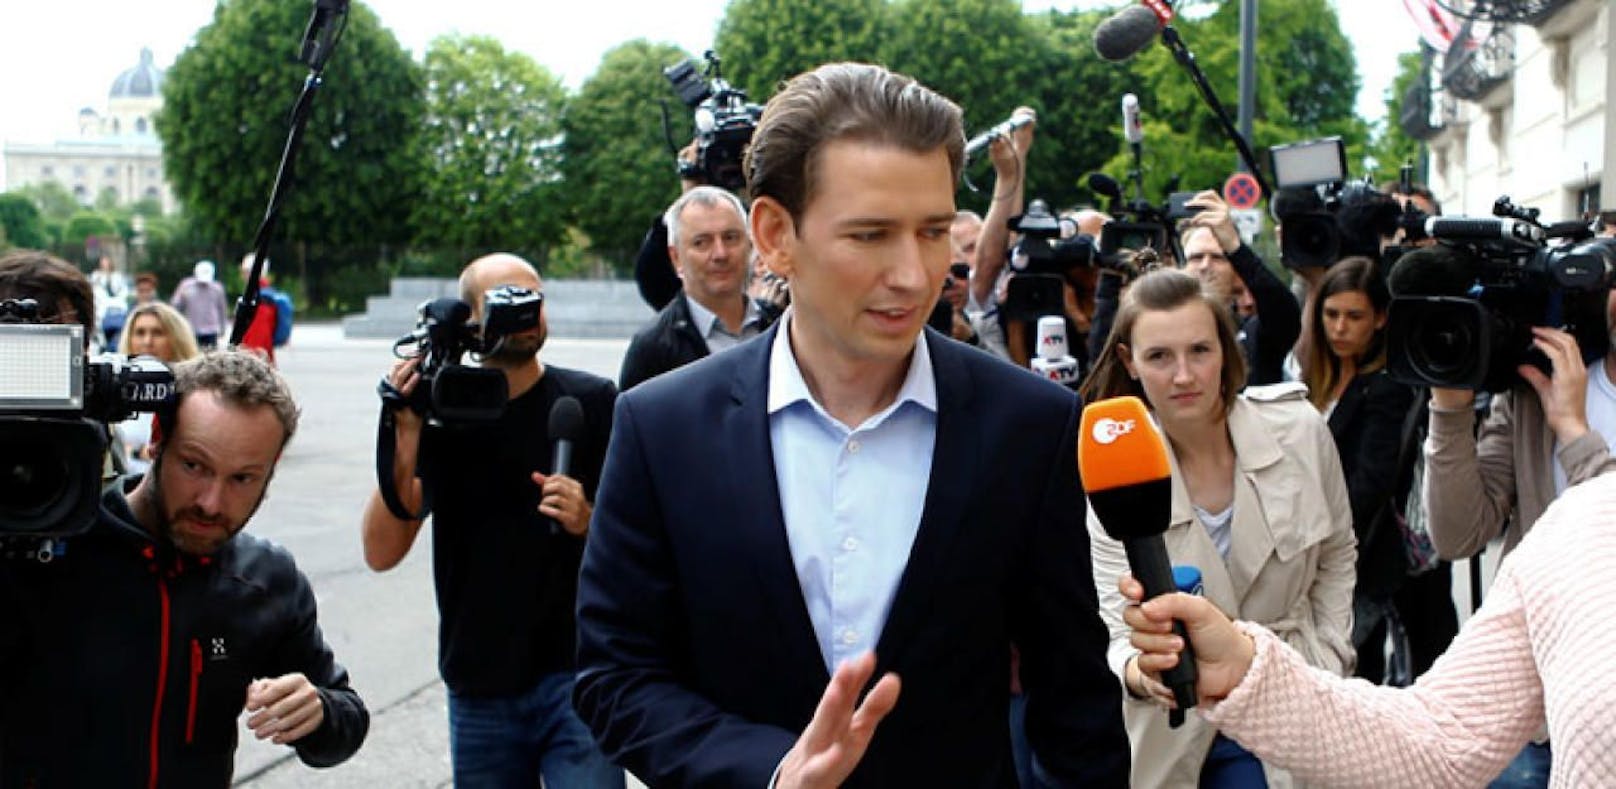 Sebastian Kurz will nicht, dass der türkische Wirtschaftminister in Wien auftritt.